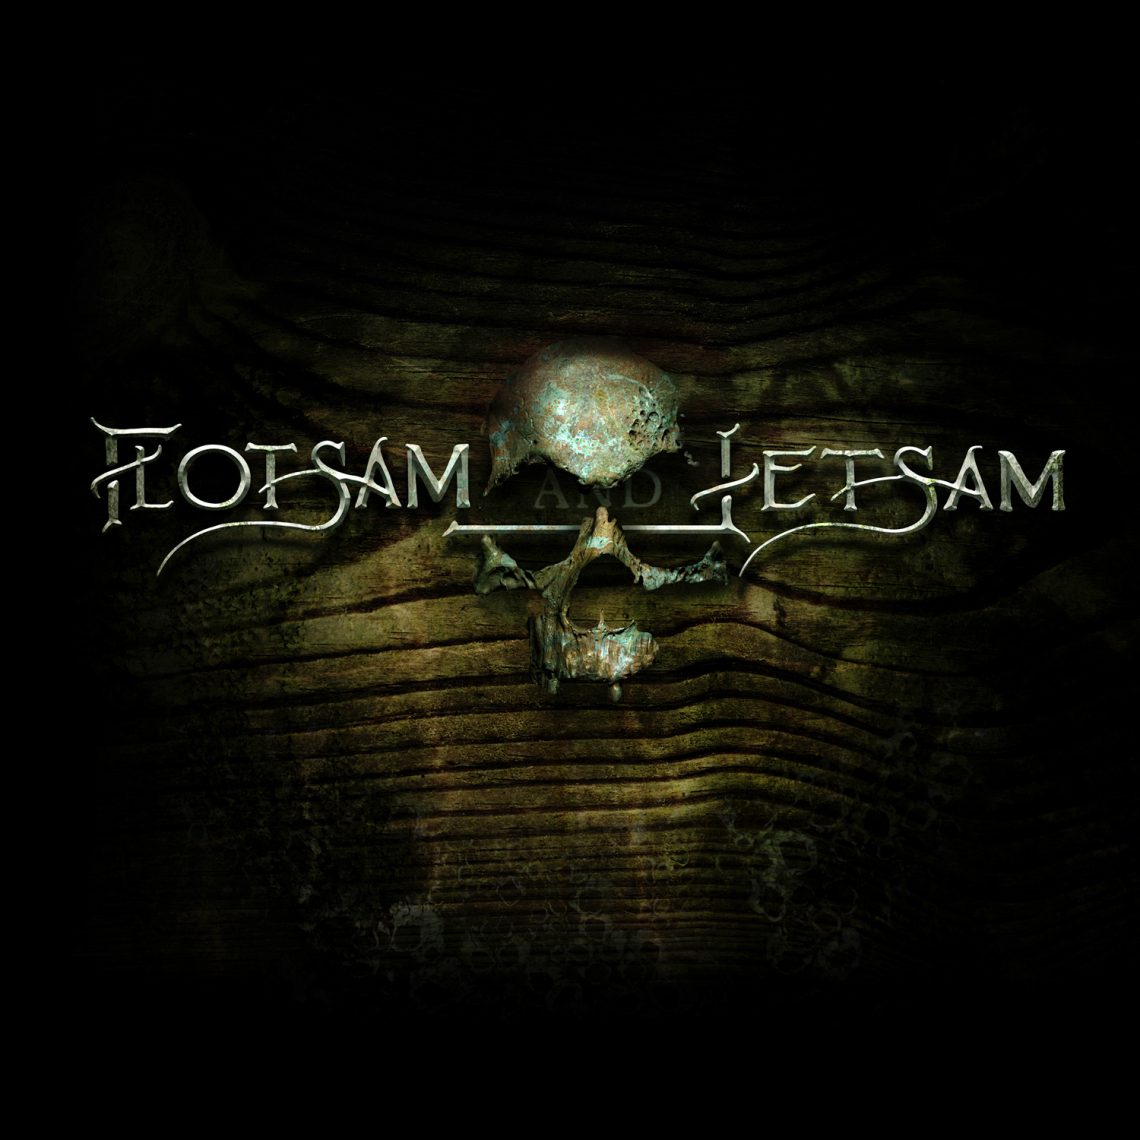 Flotsam & Jetsam – Flotsam & Jetsam CD Review